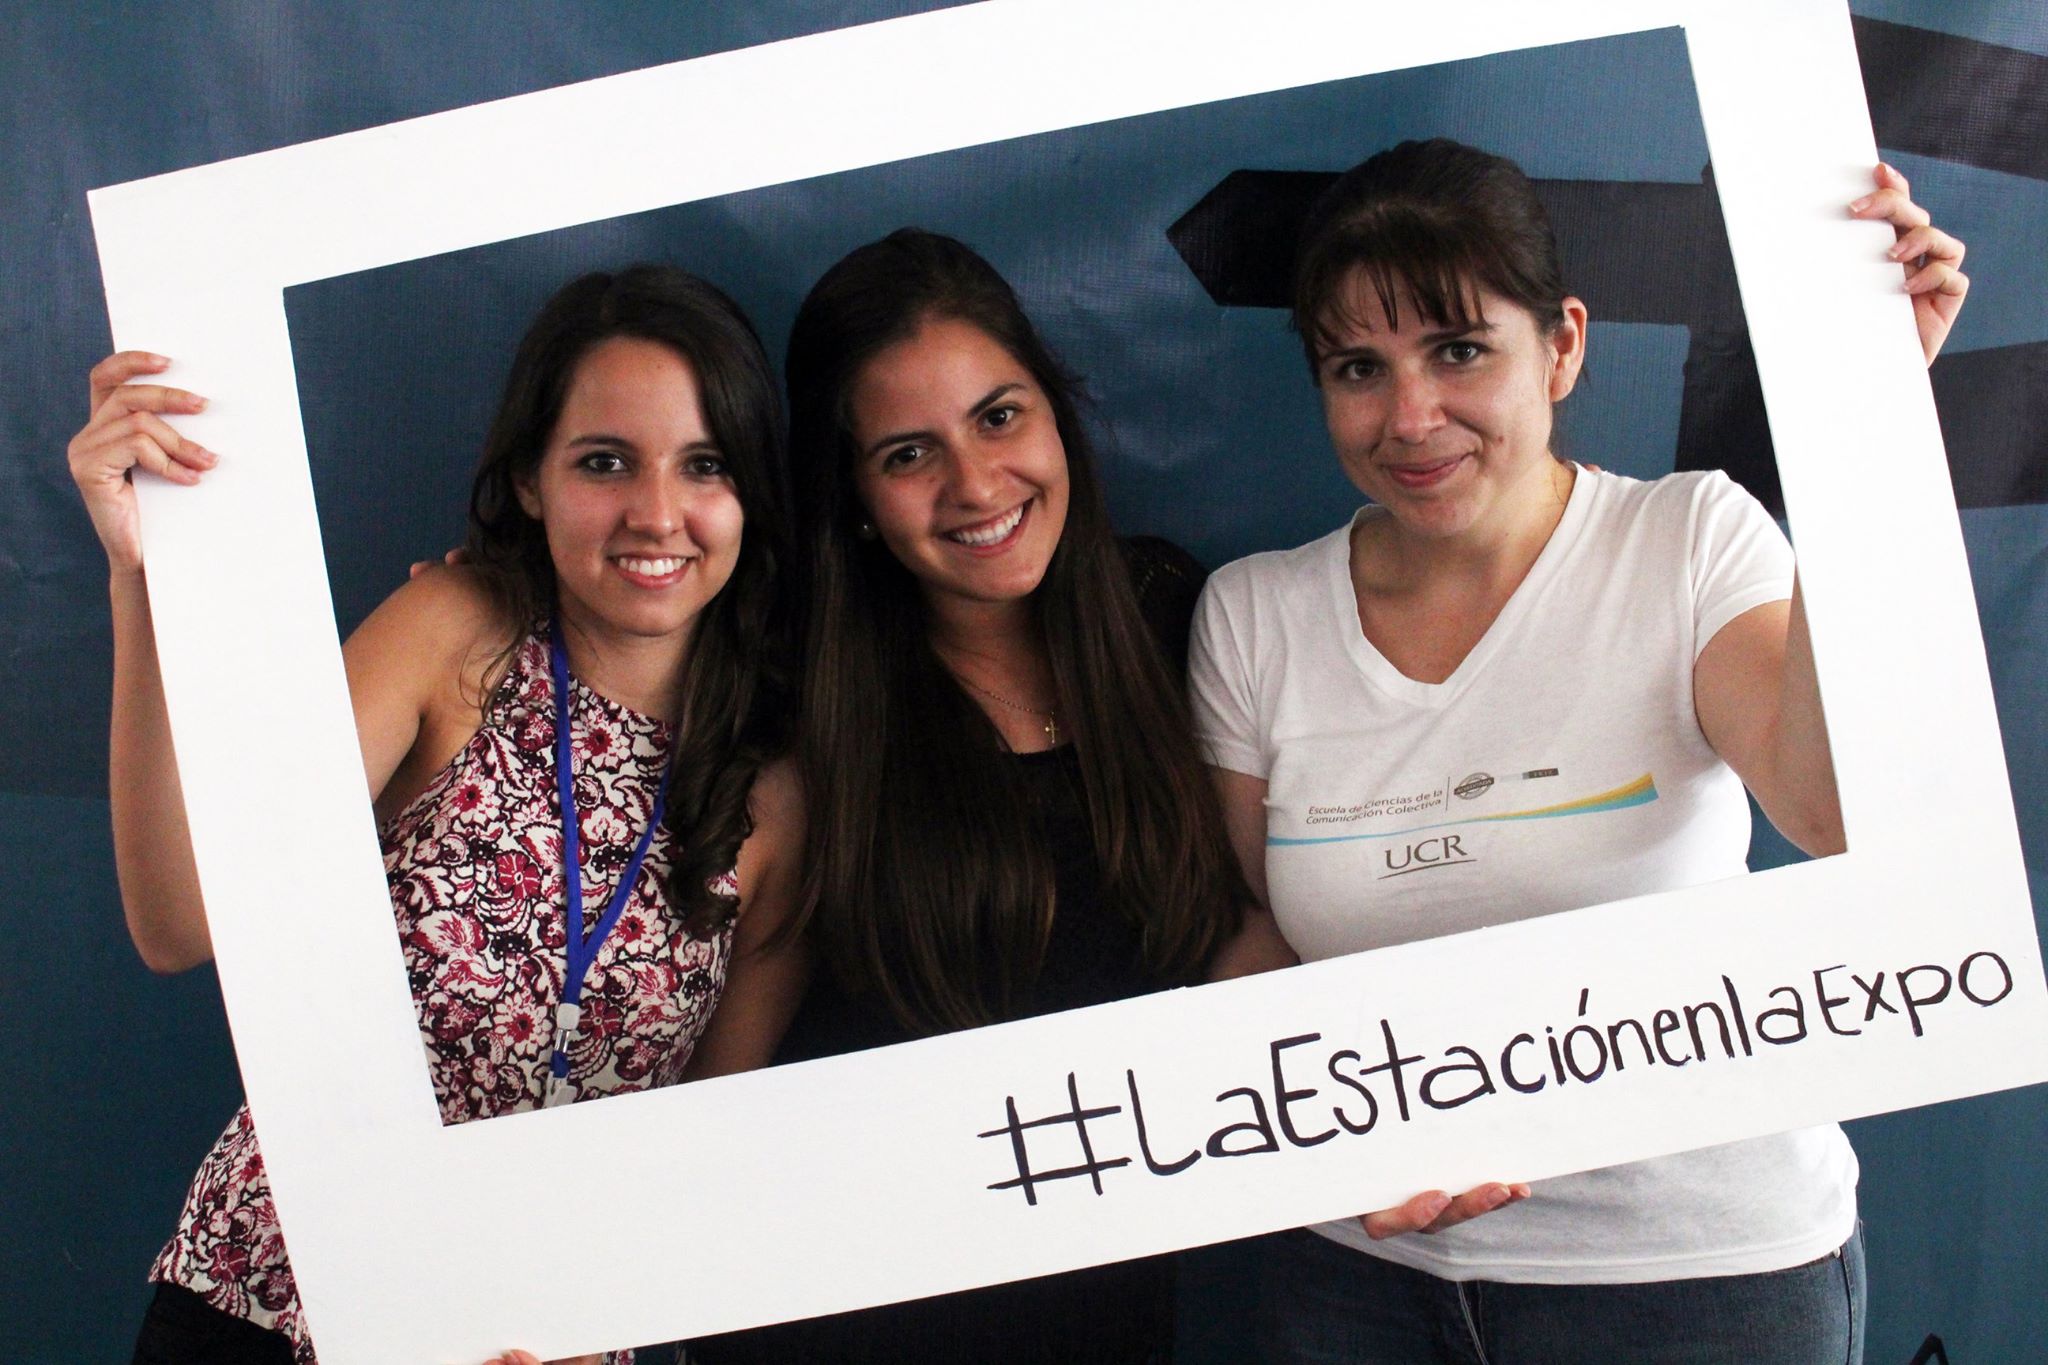 “Vir” Soley, Laura Gordillo y Elsy Vargas participaron en la Expo UCR 2015 como representantes de “La Estación”. Fotografía cortesía de La Estación. 